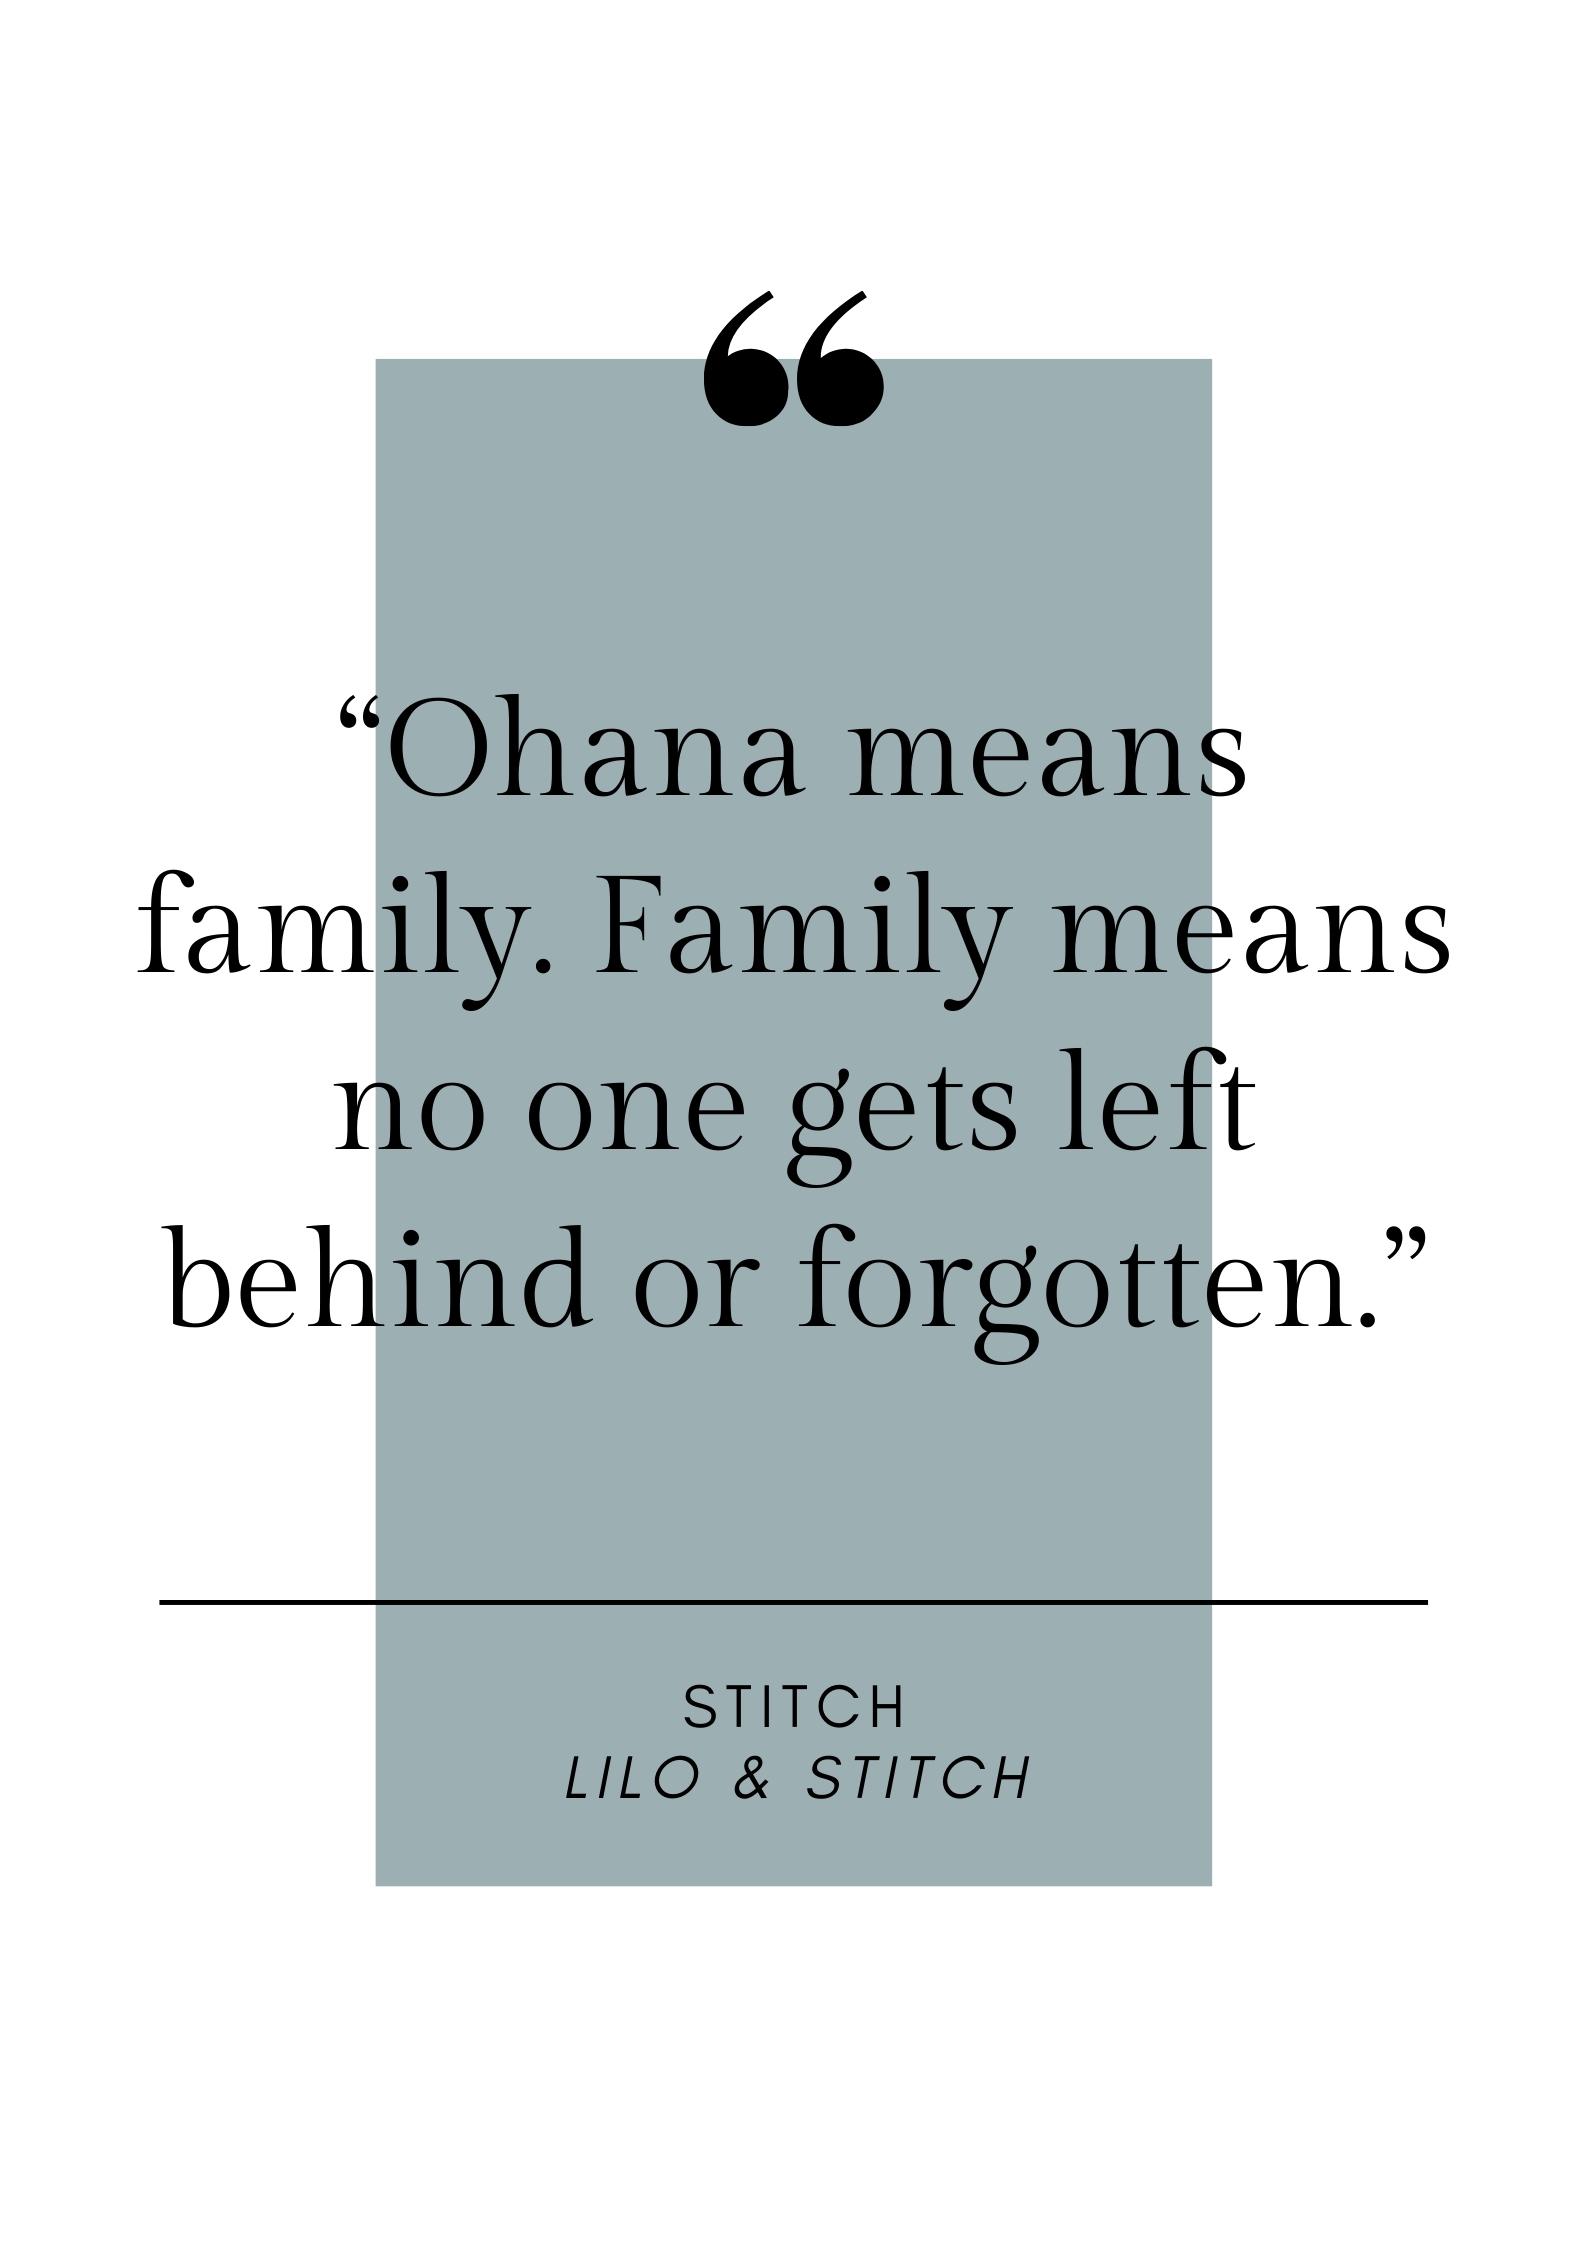 lilo & stitch quote